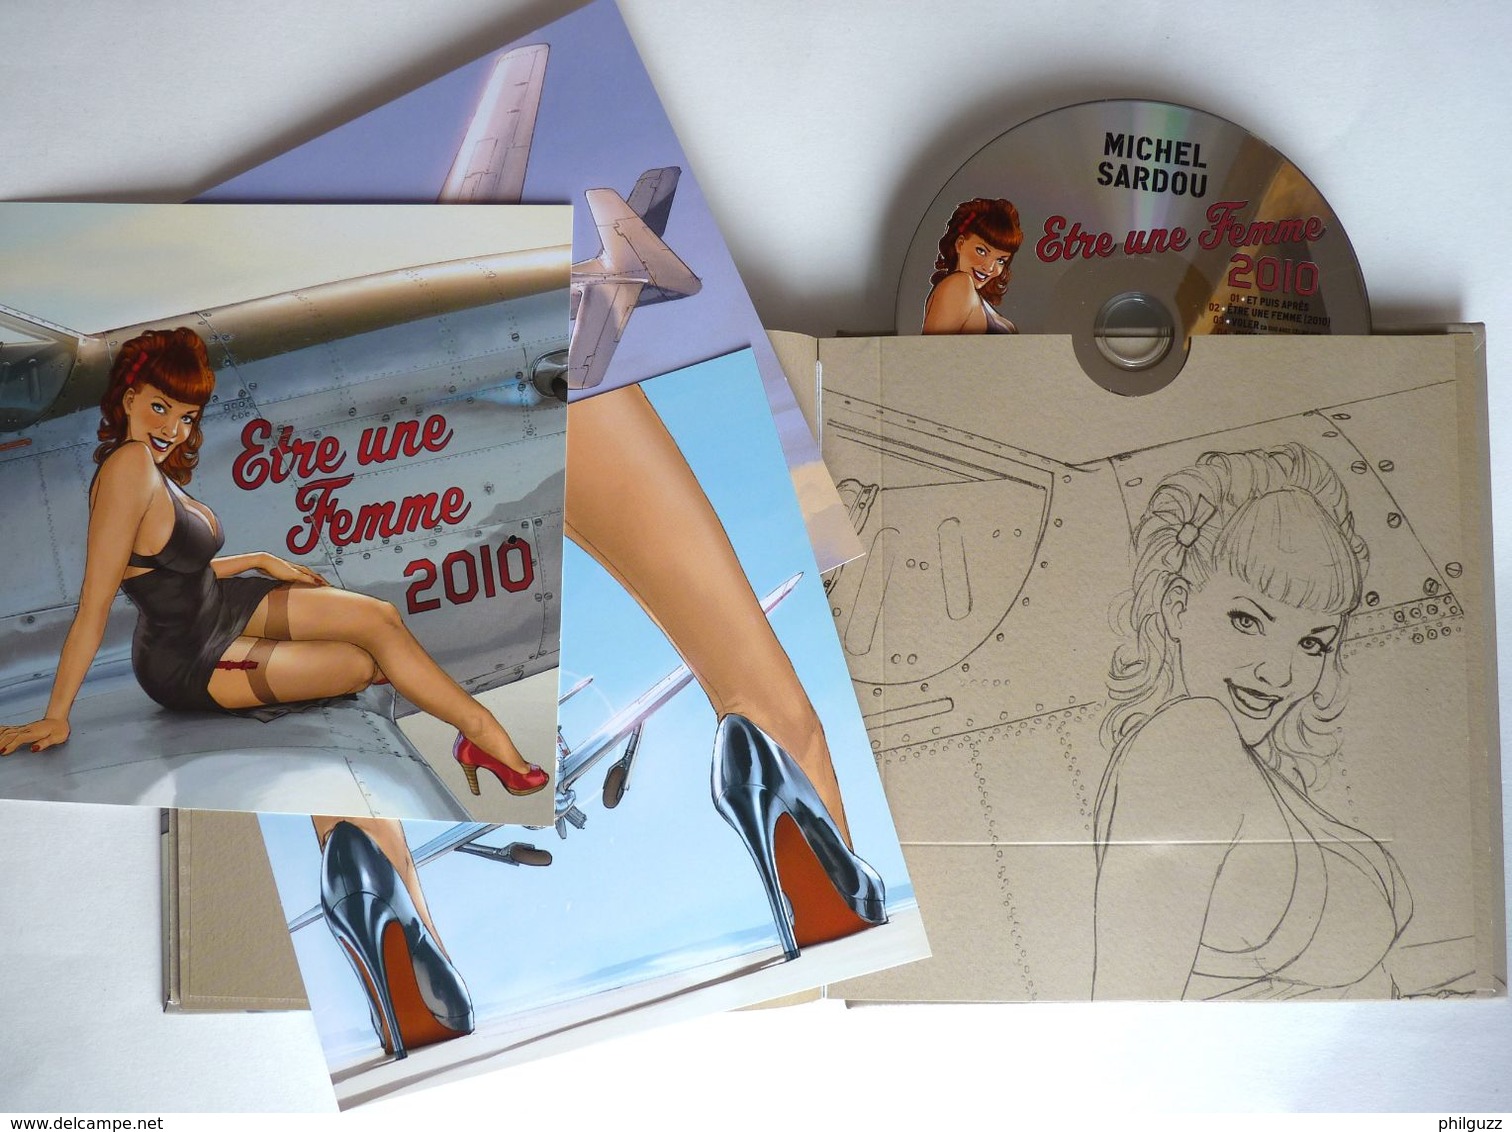 LIVRE CD COLLECTOR édition Limité ETRE UNE FEMME Michel SARDOU - HUGAULT 2010 AVEC 3 XL ET UN CD - Dischi & CD